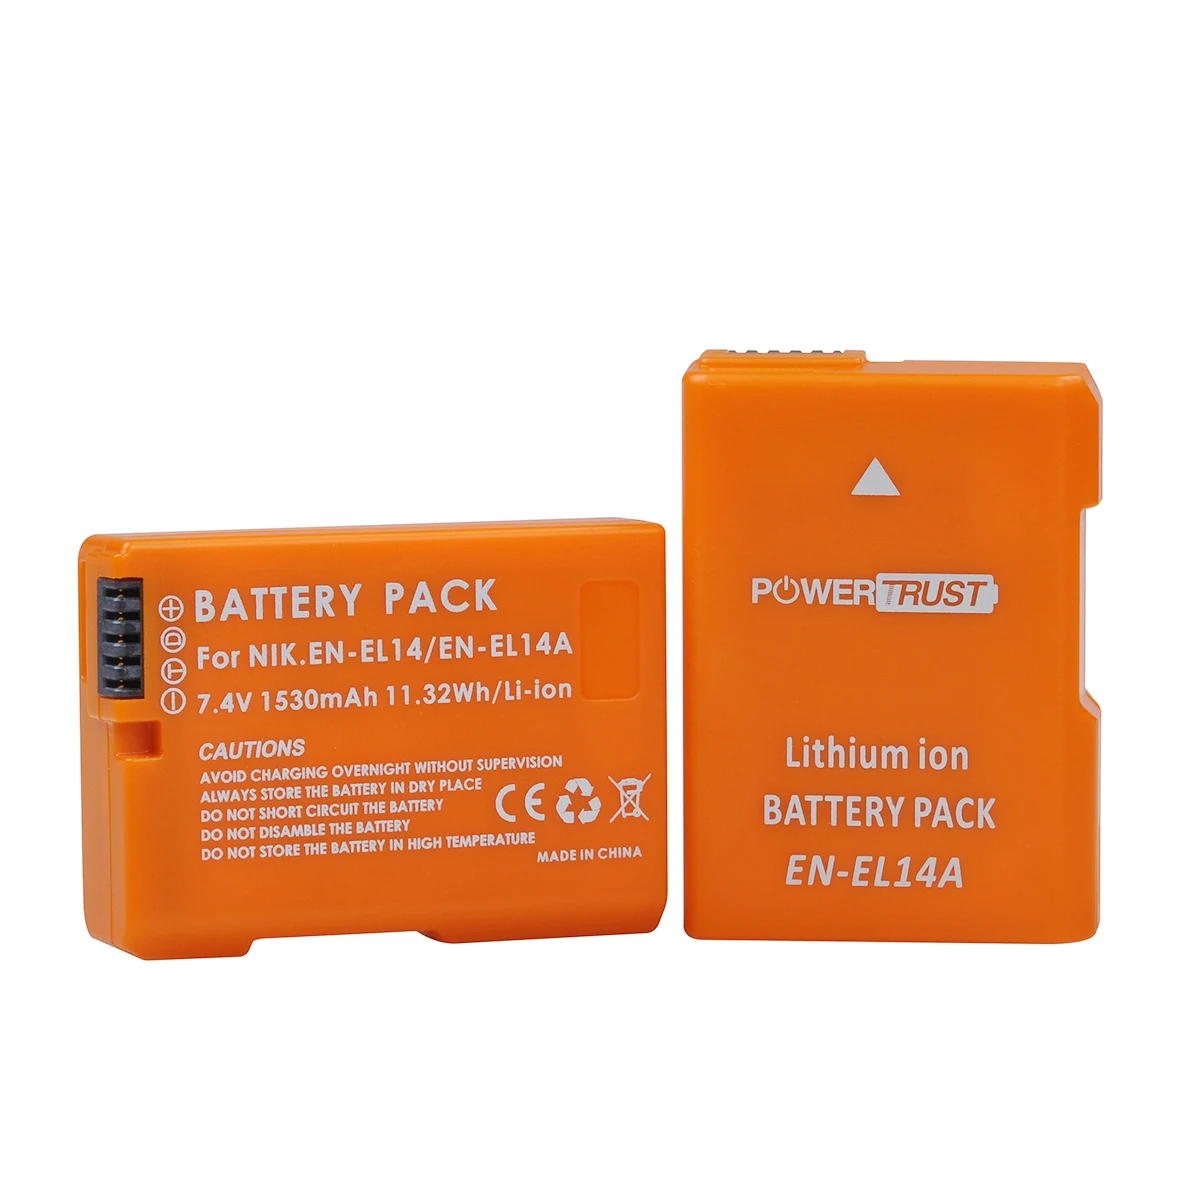 

PowerTrust 1530mAh EN-EL14 EN-EL14a Orange Battery for Nikon D3100 D3200 D3300 D5100 D5200 D5300 P7800 P7700 P7100 P7000